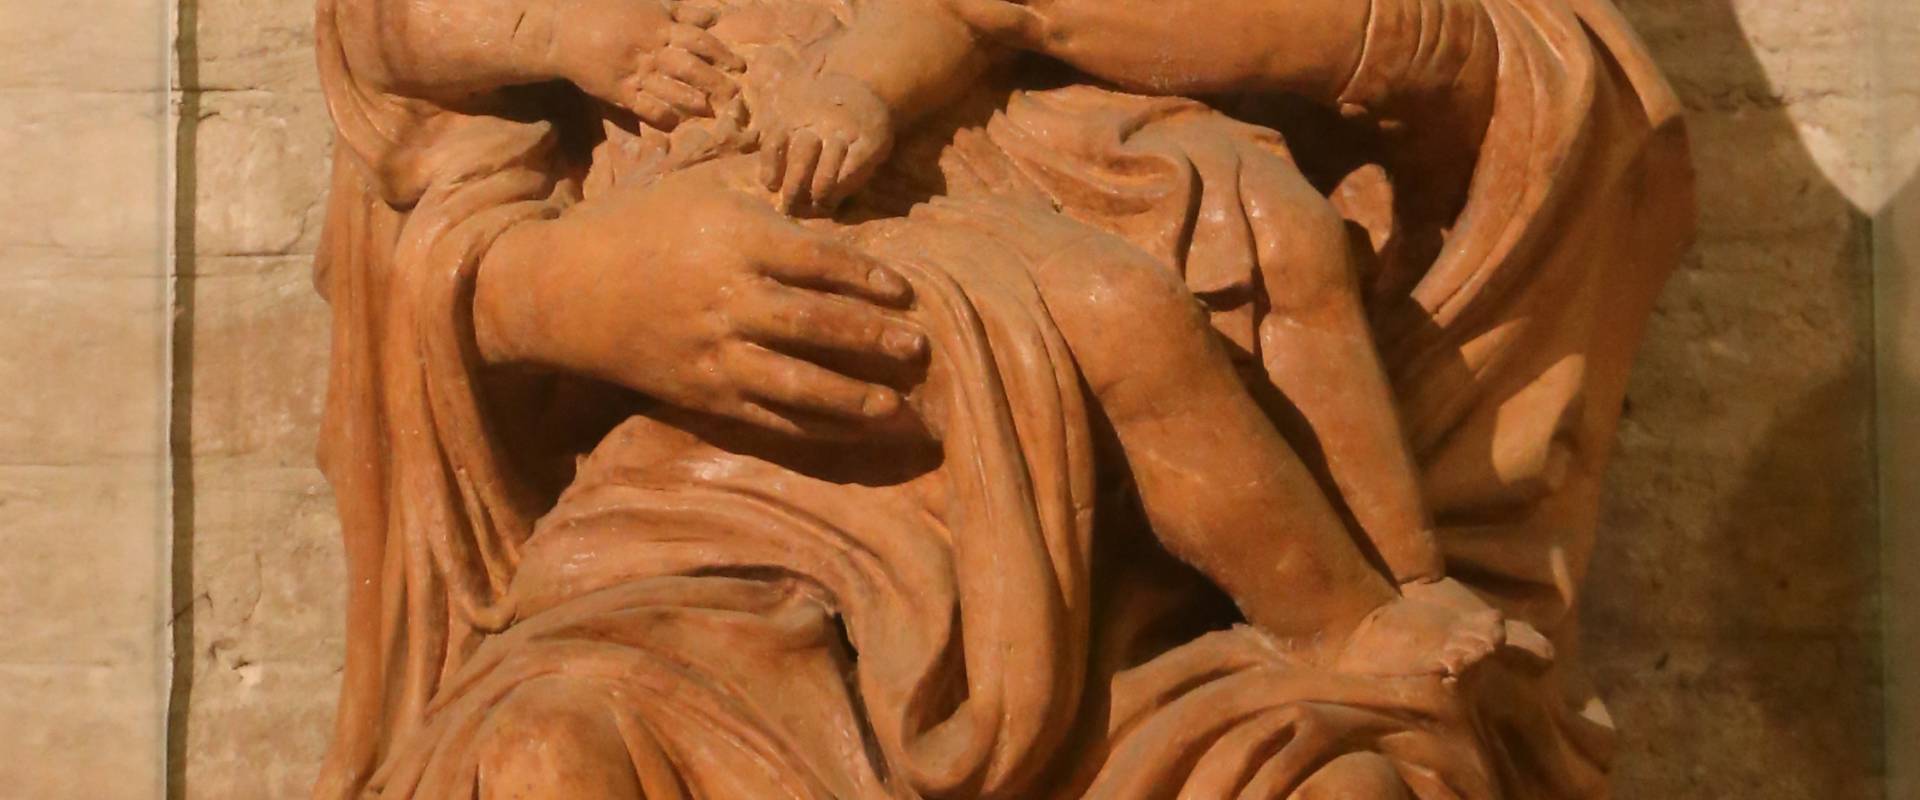 Forlì, san mercuriale, interno, madonna col bambino in terracotta foto di Sailko